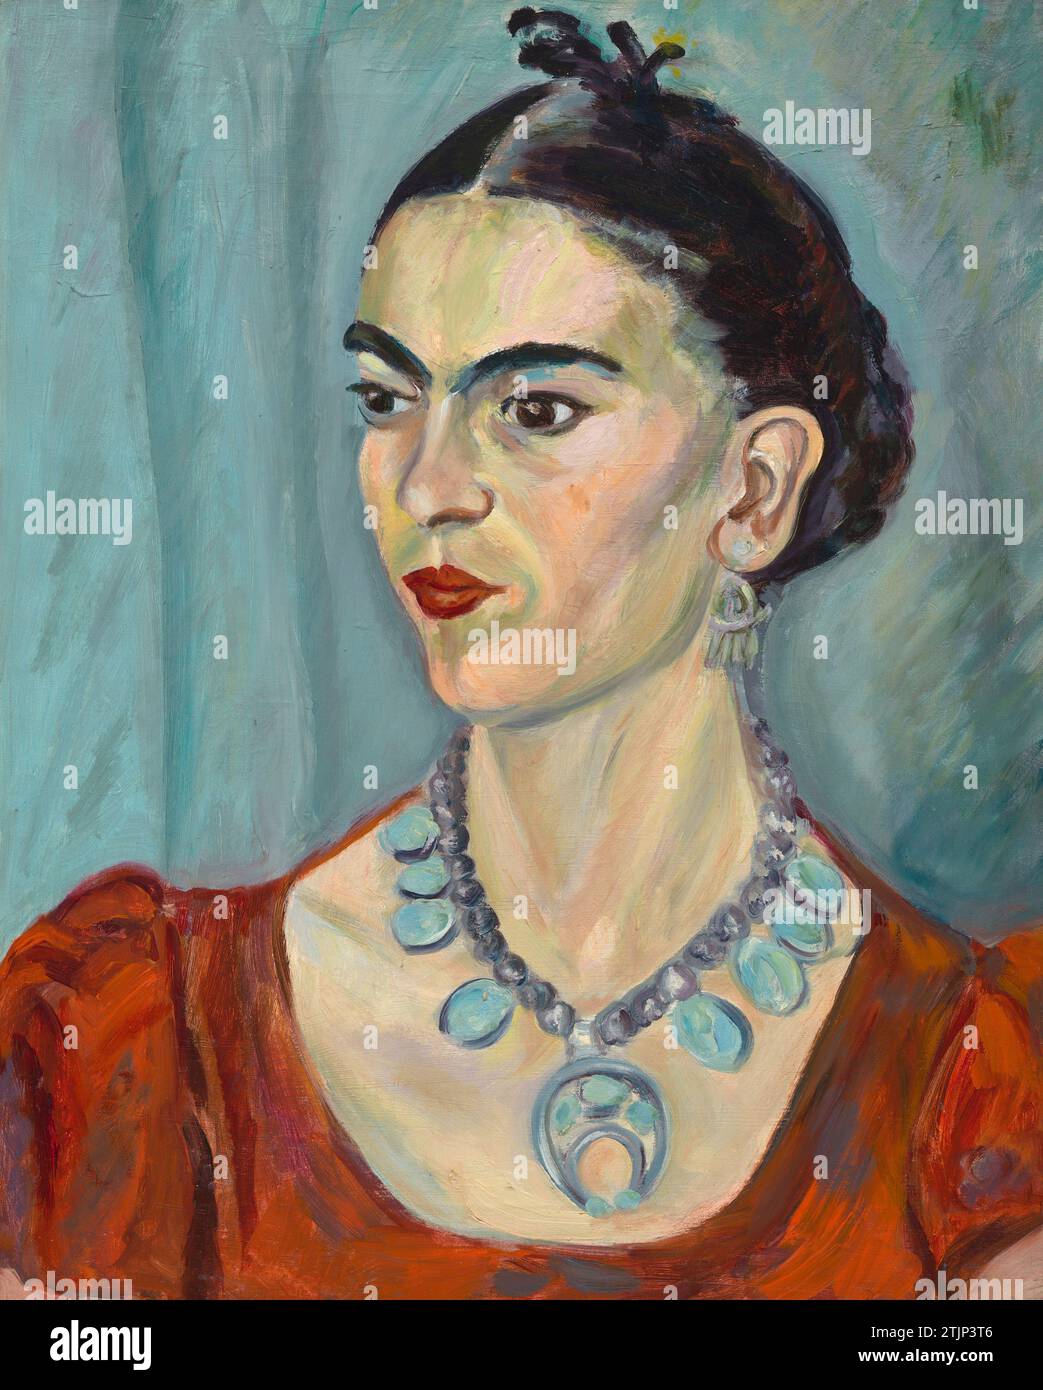 Ritratto di Frida Kahlo di Magda Pach. Frida Kahlo attingeva alla cultura popolare del Messico per sviluppare uno stile visionario di autoritratto. Fondendo fantasia con realismo, ha dato forma visiva alla sofferenza che aveva subito a seguito di una lesione traumatica e di una cattiva salute, sondando anche la politica di genere, classe e razza dalla sua prospettiva di comunista impegnata. Sostenendo l'esperienza personale e l'identità culturale come soggetti validi per l'arte, Kahlo è diventato un'icona culturale. Versione ottimizzata di un'immagine dell'opera d'arte nella National Portrait Gallery, Smithsonian Institution, Washington DC Foto Stock